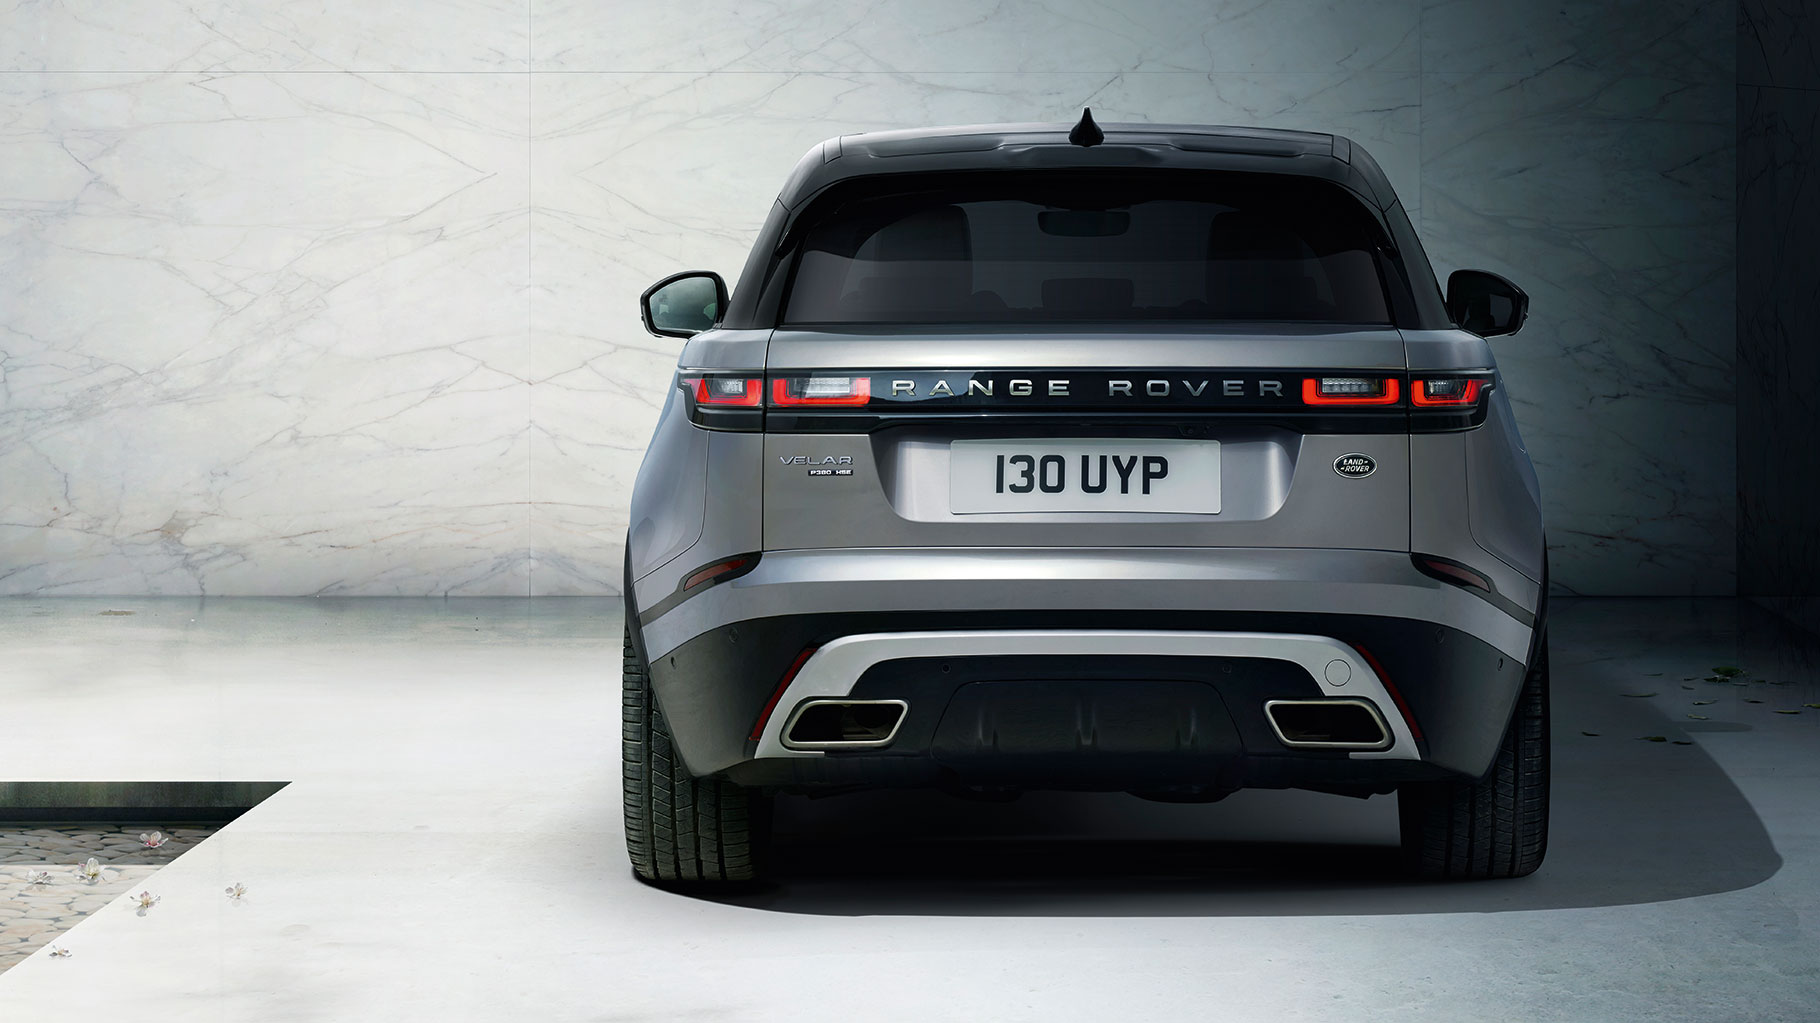 2018-Range-Rover-Velar-rear-view-back-side-uhd-4k-wallpaper.jpg